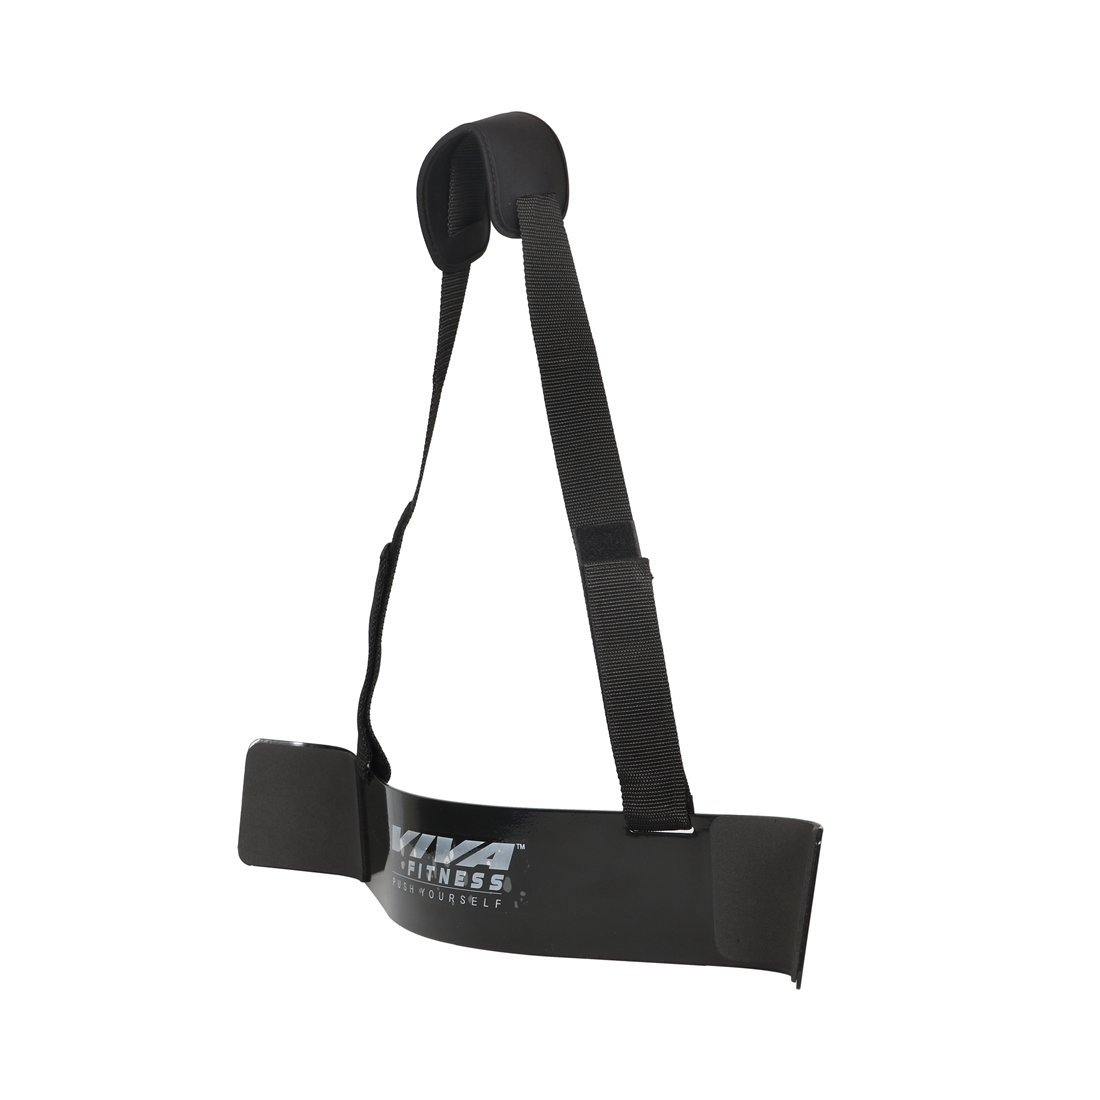 Viva Fitness Exercise Arm Blaster (Black) - Best Price online Prokicksports.com